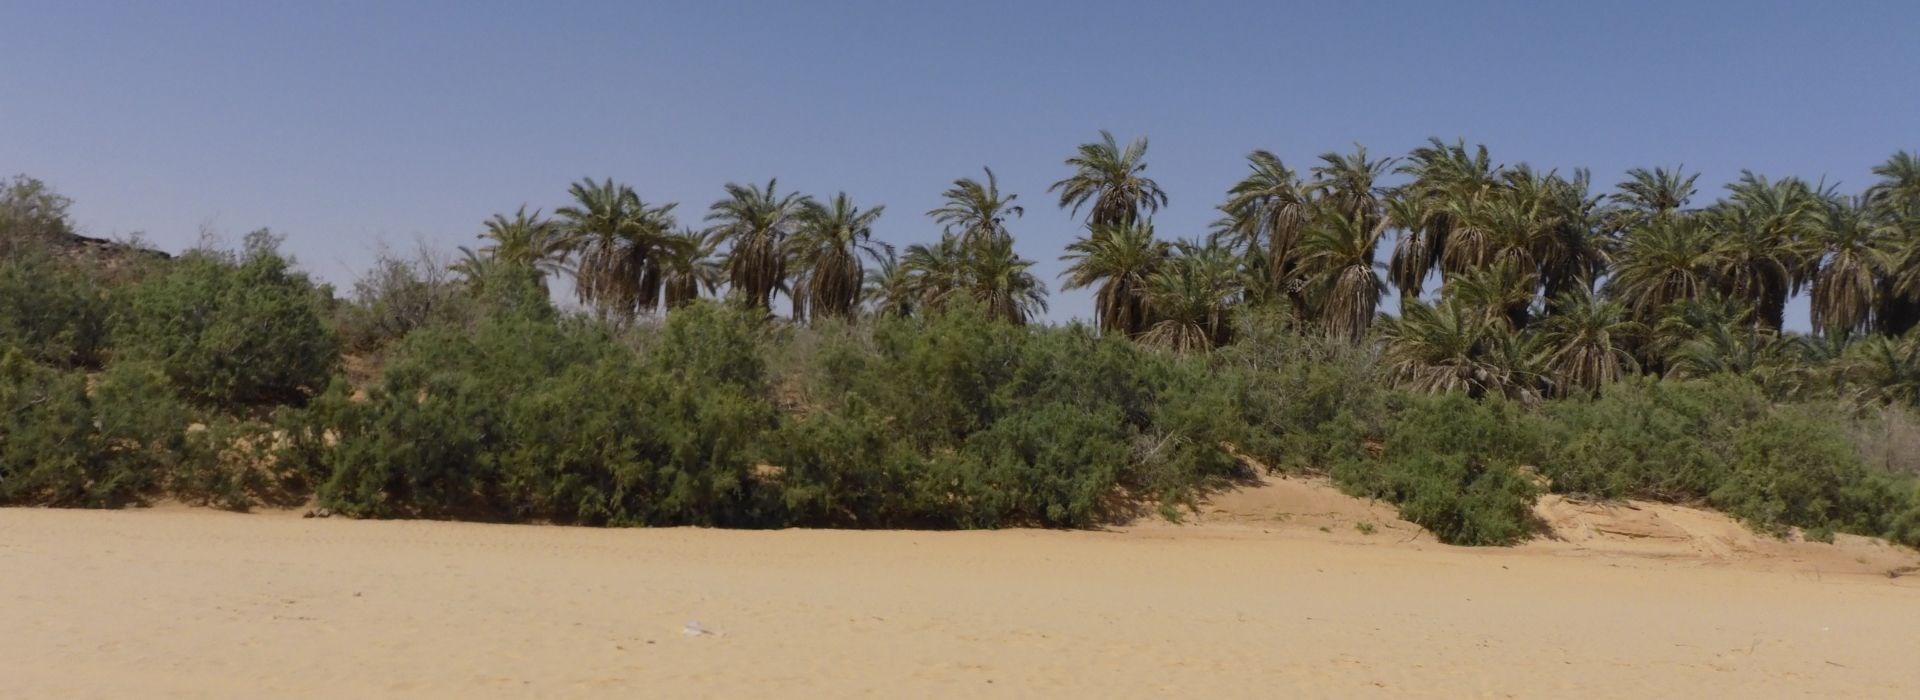 Visiter L'Oasis El Meddah - Mauritanie